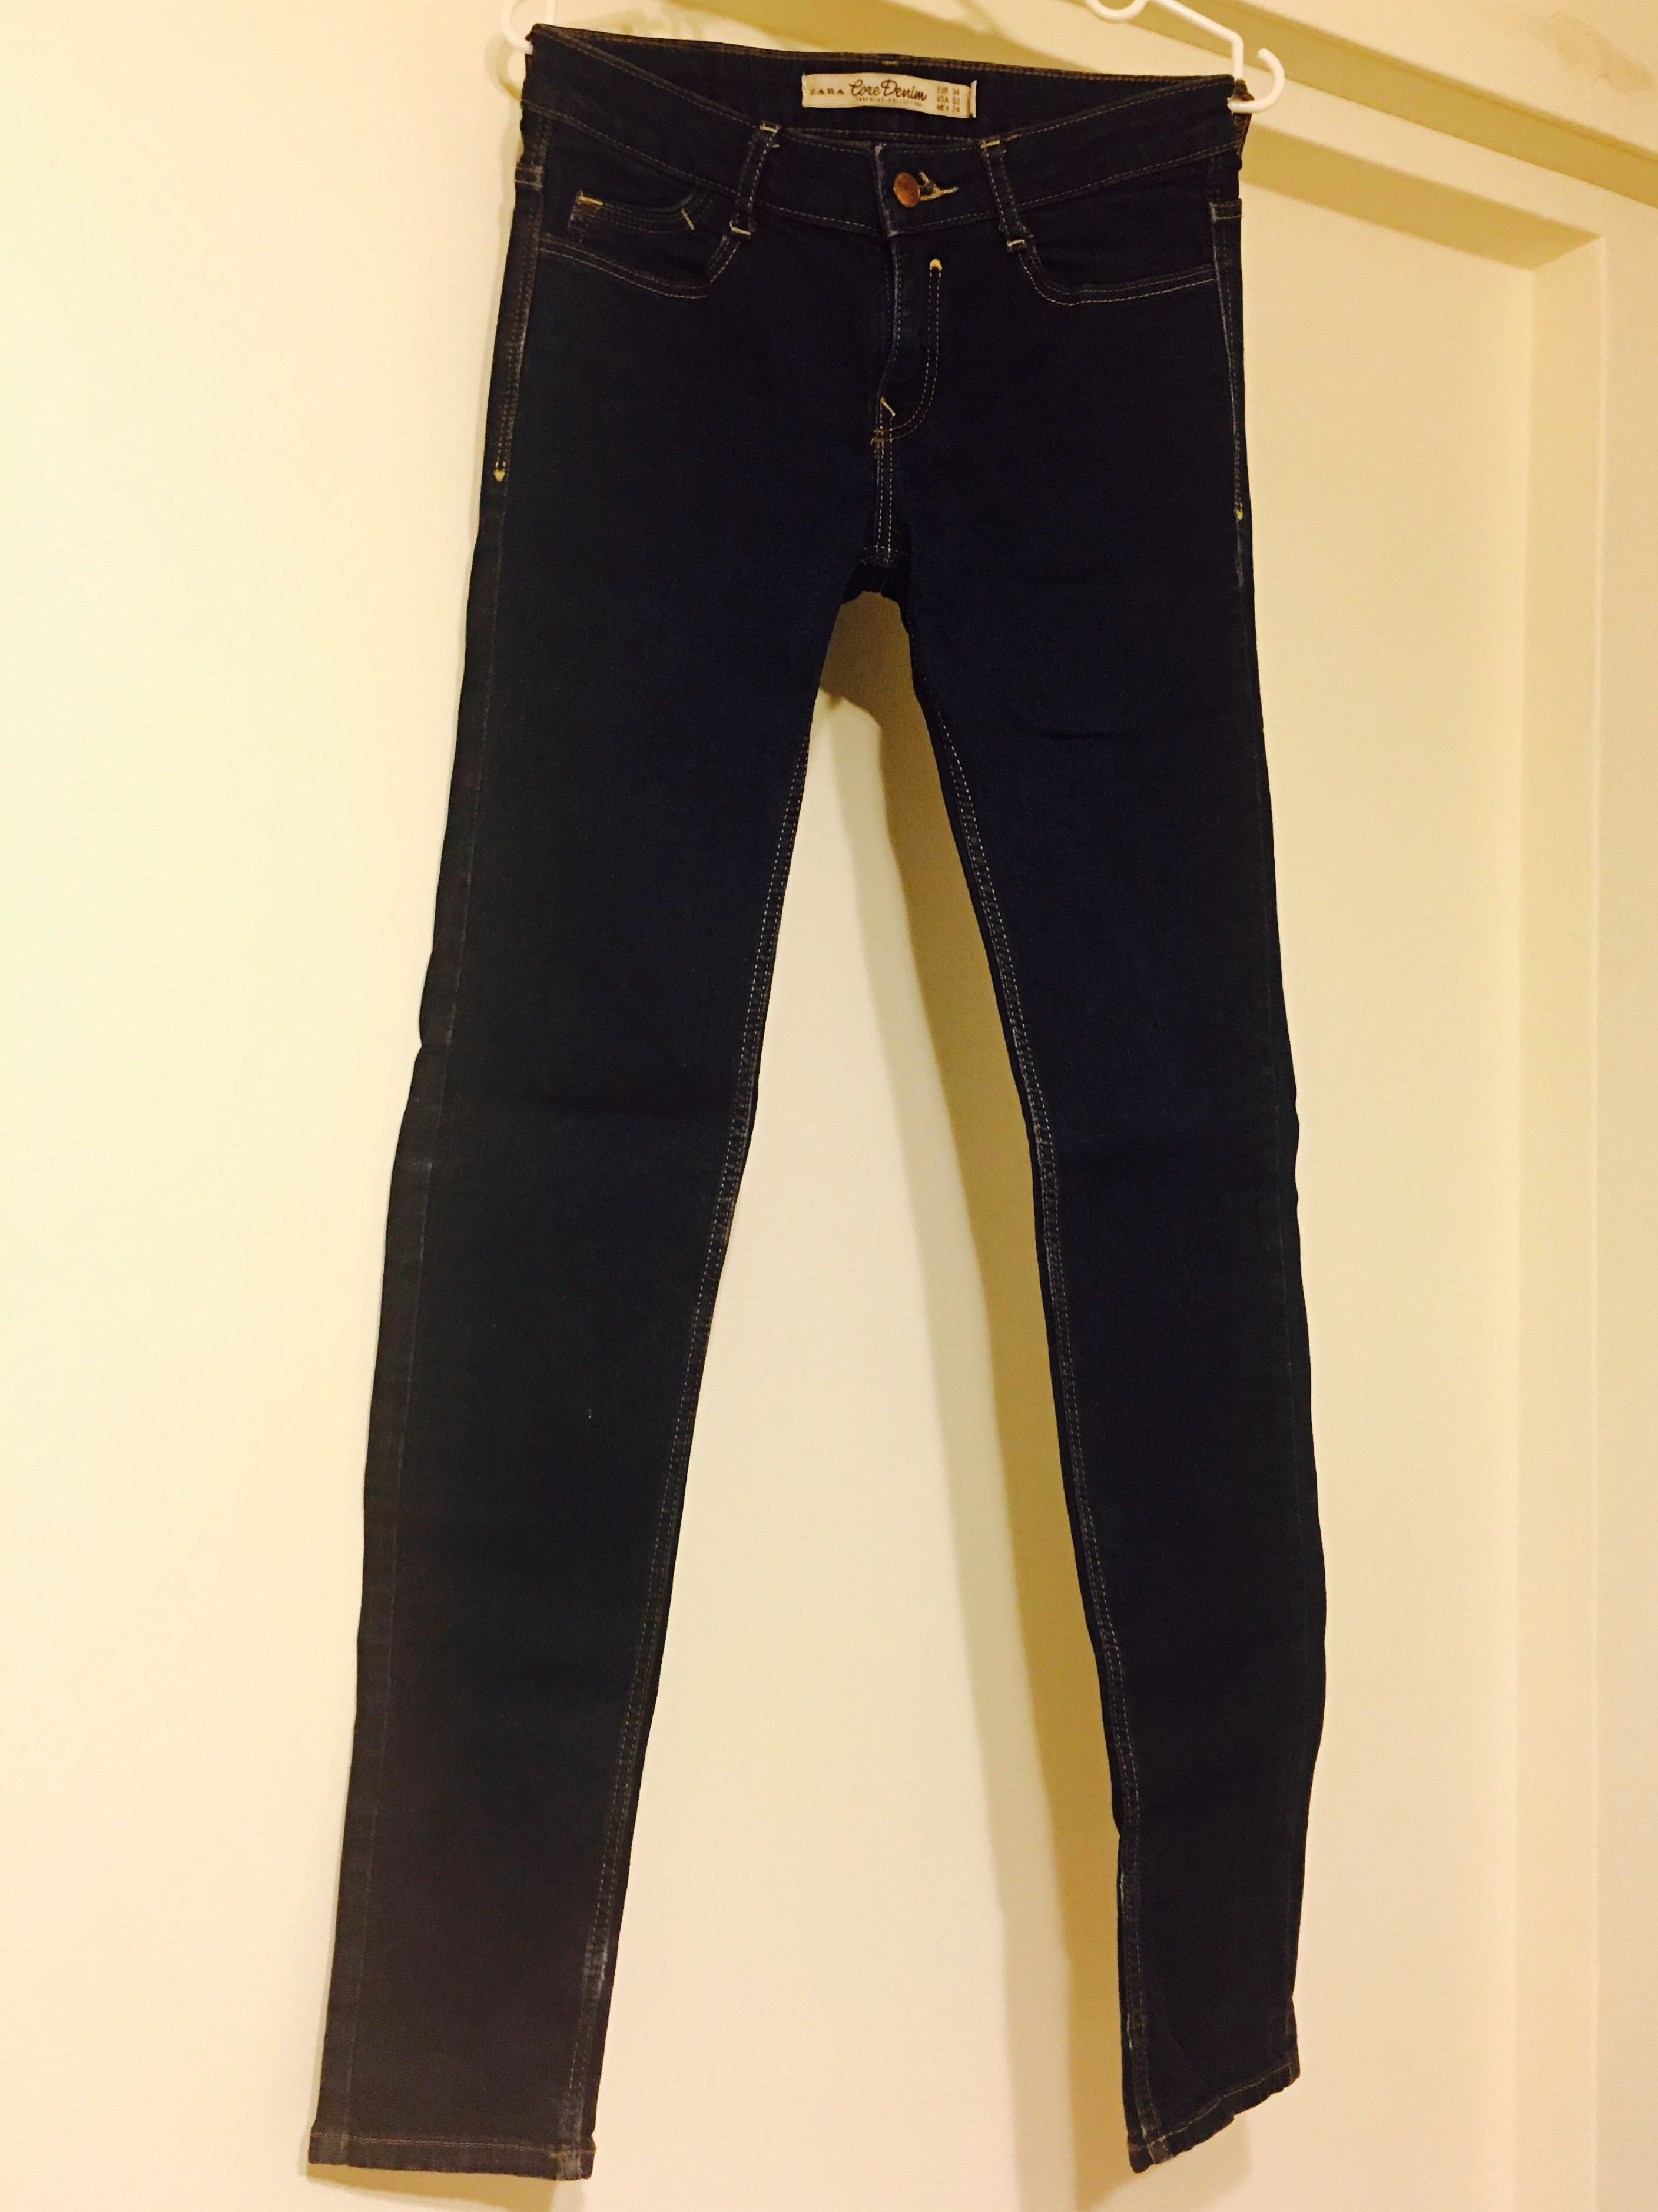 zara women's jeans